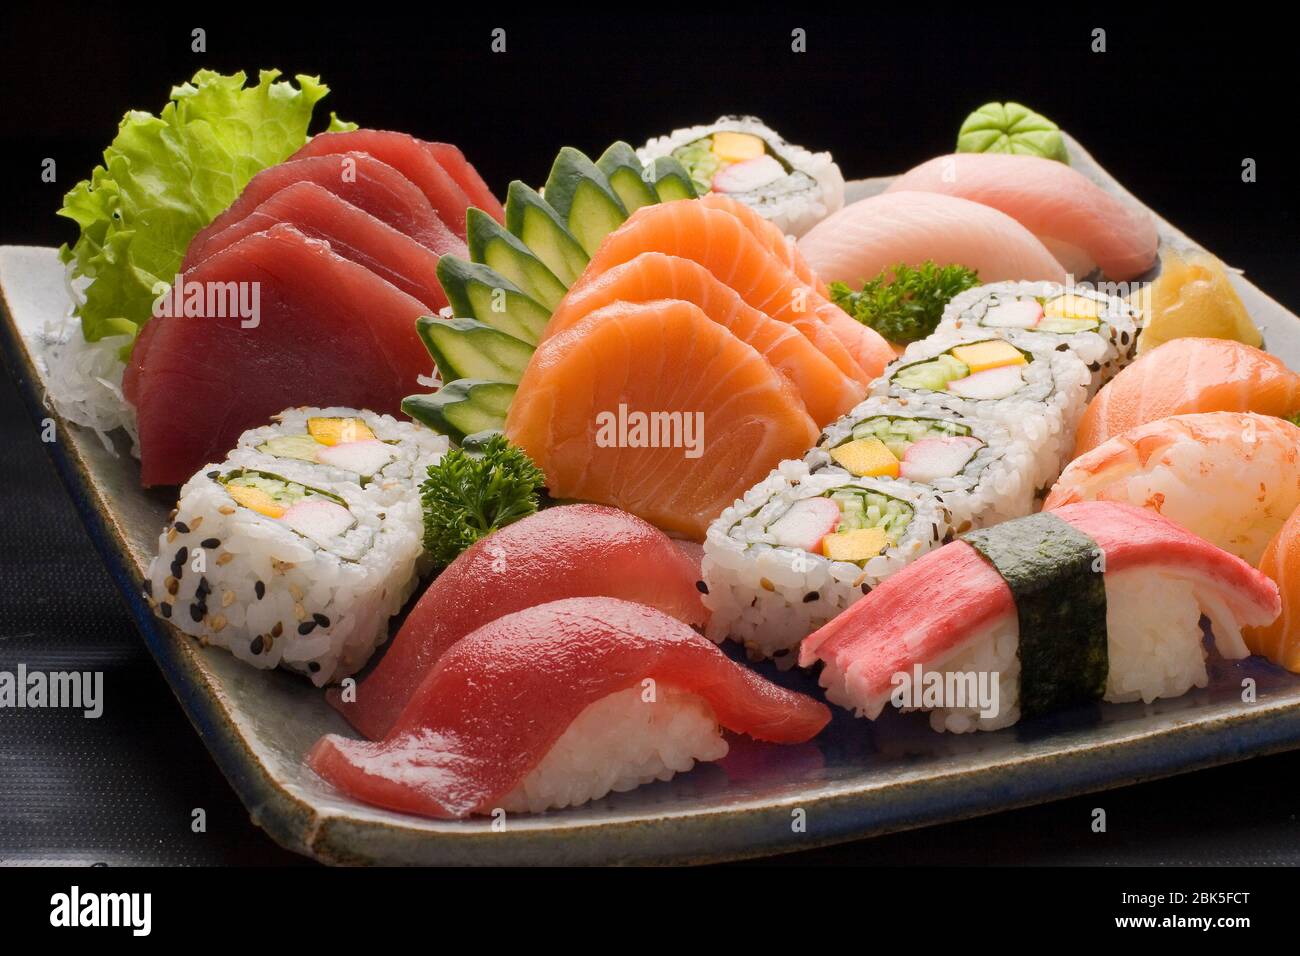 Piatti tipici giapponesi in piatti colorati e decorati, sushi e